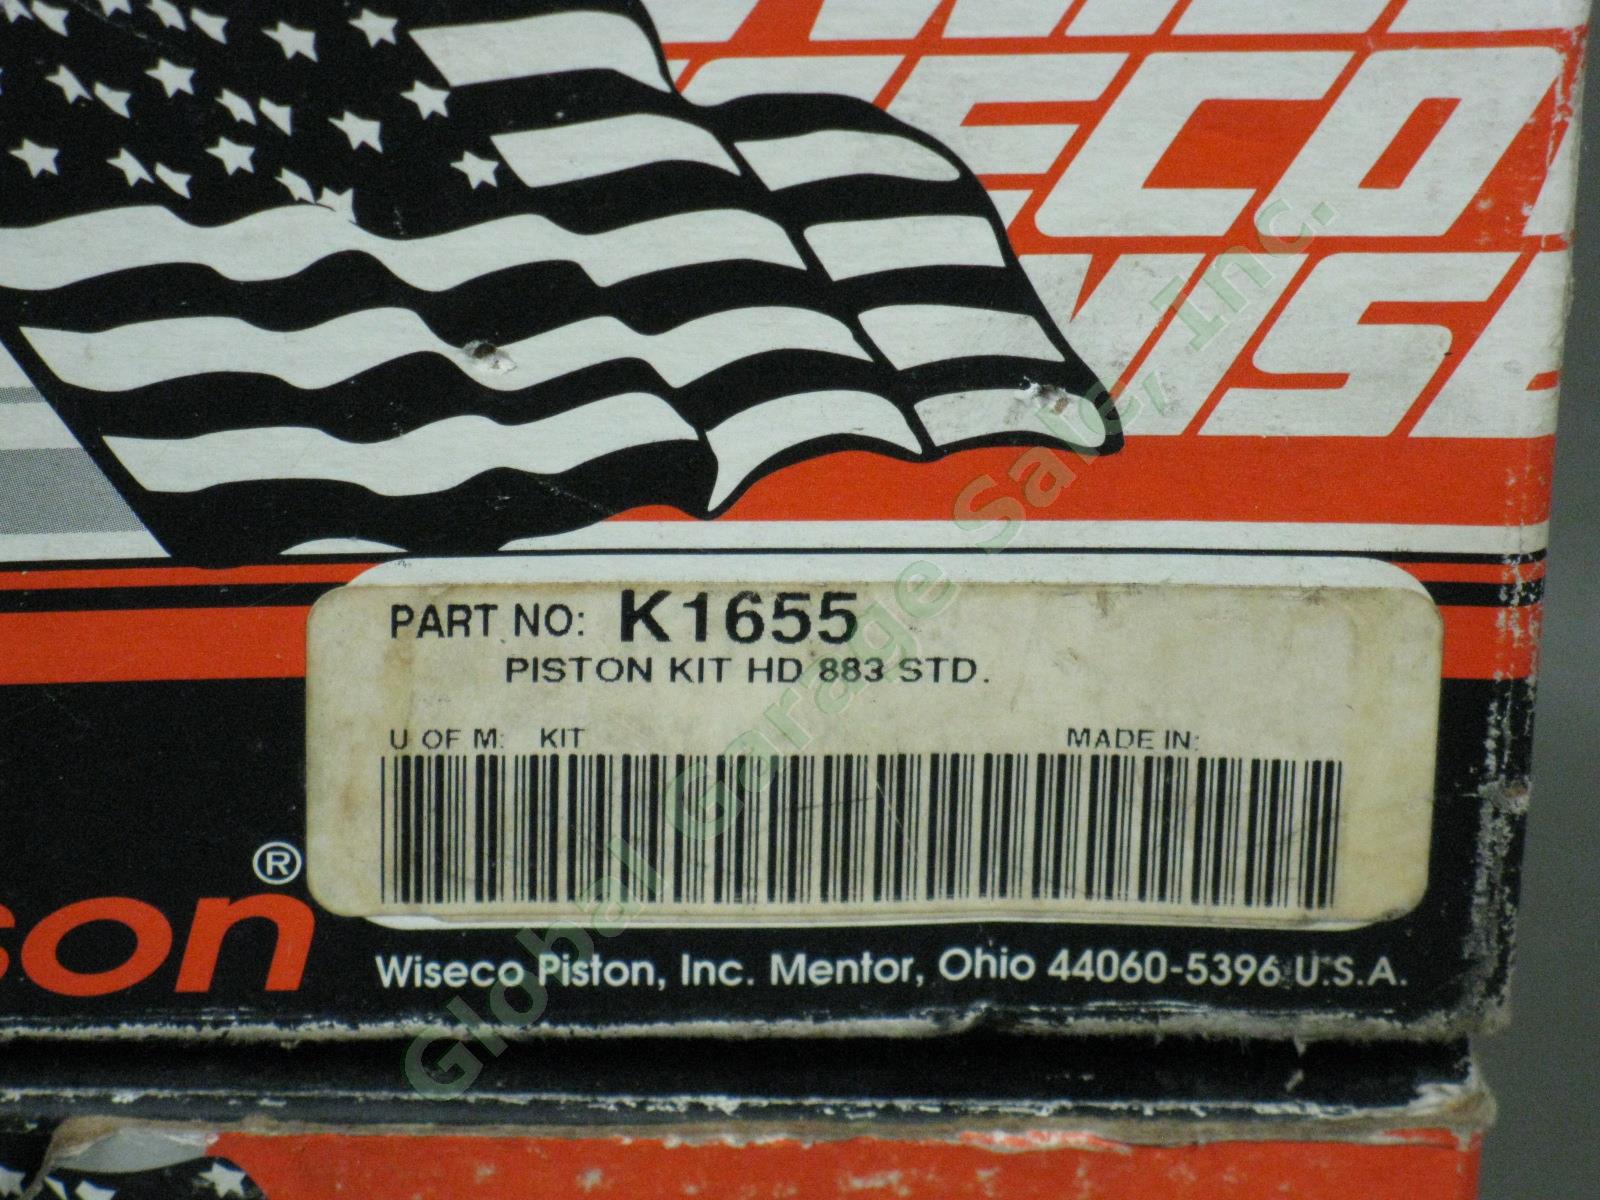 NOS Vtg Wiseco Screaming Eagle Harley Davidson Piston Camshaft Lot K1604 K1655 + 5